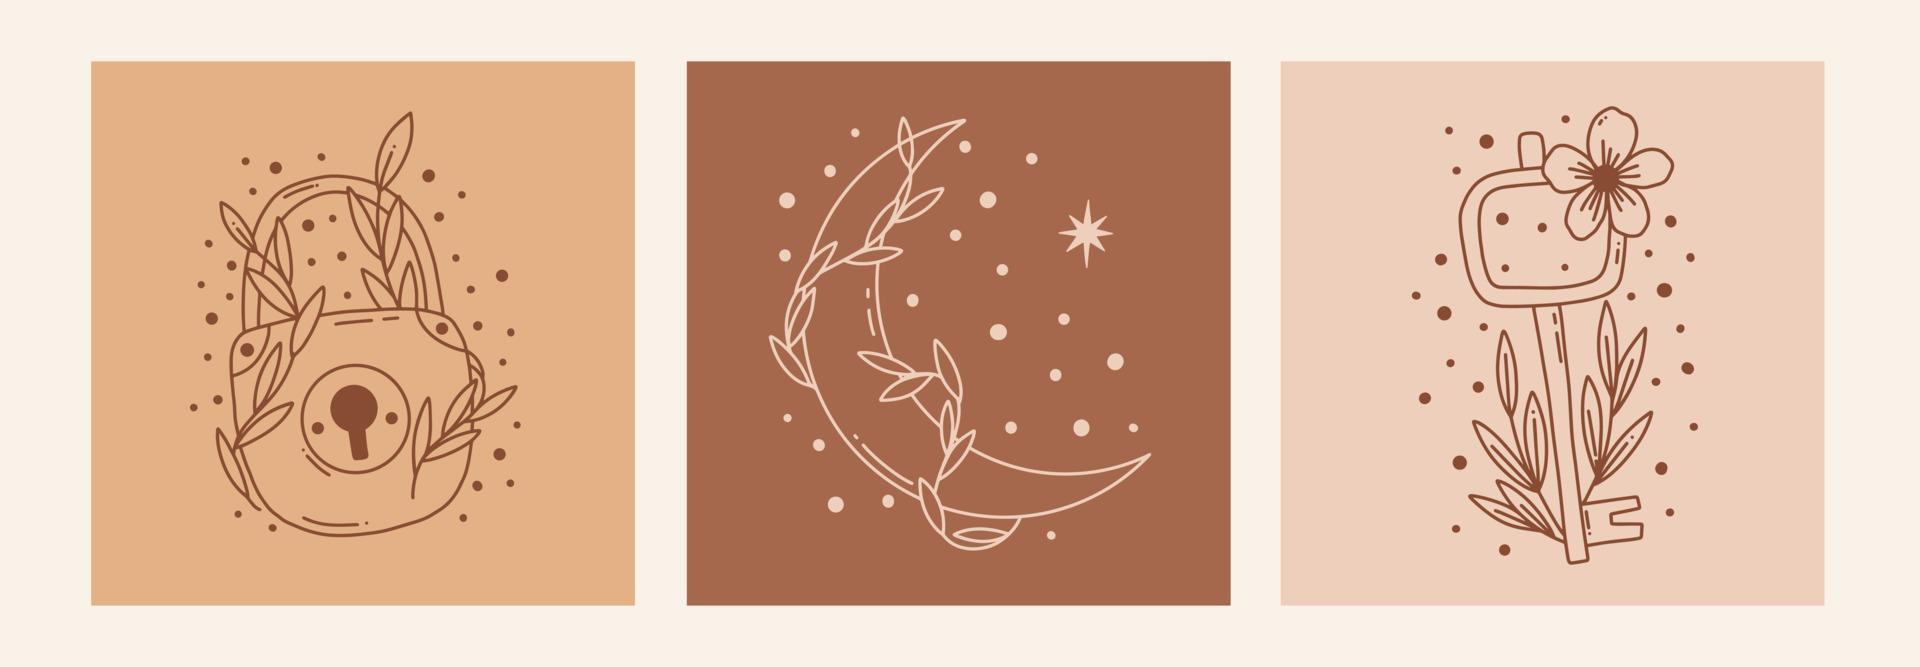 boho mystieke doodle esoterische set. magische lijnkunstposter met maan, sleutel, slotbloem. Boheemse moderne vectorillustratie vector